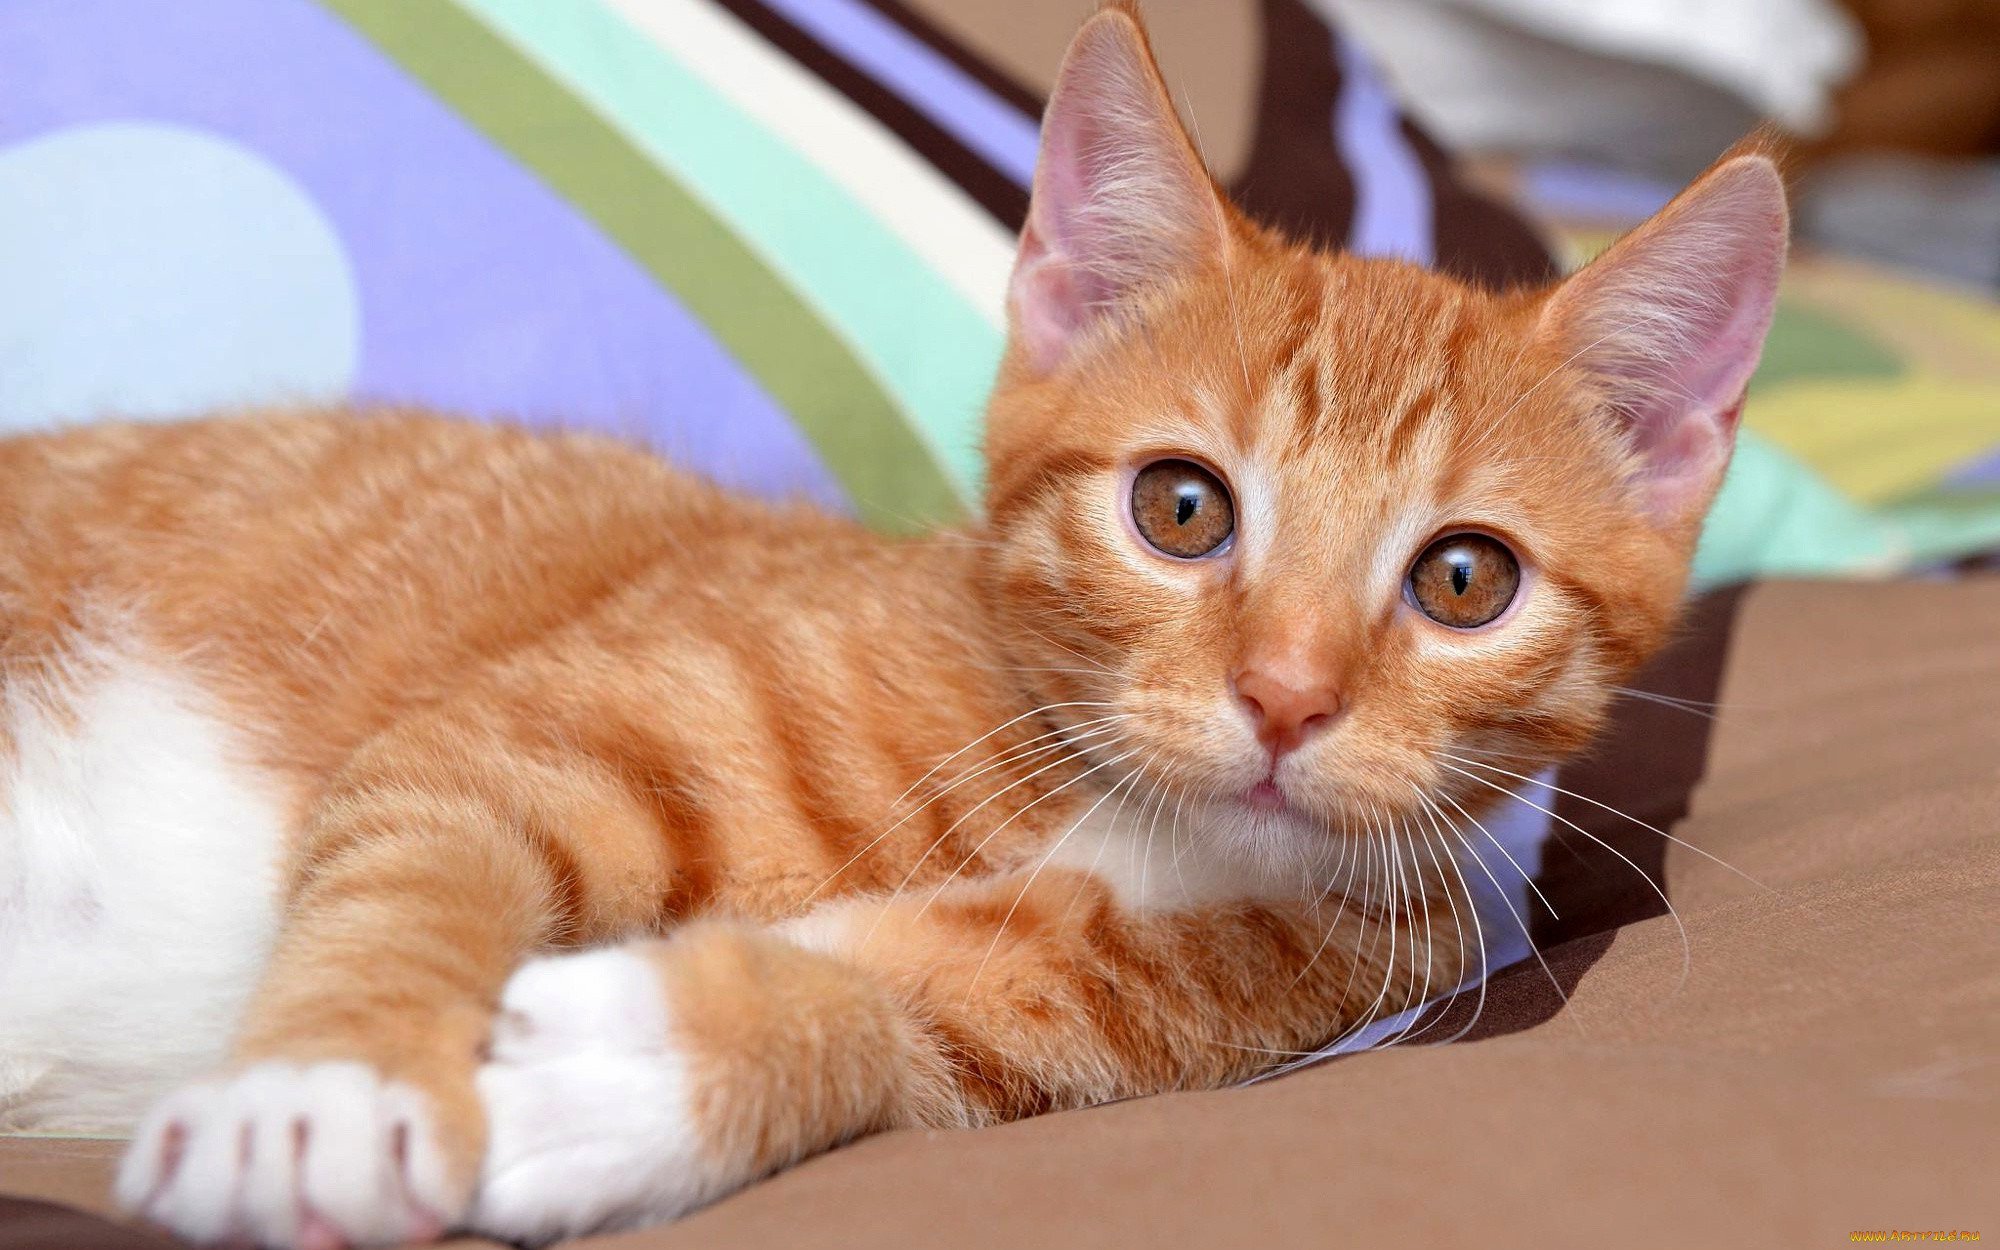 Рыжие породы кошек с фотографиями. Европейский короткошерстный кот рыжий. Европейская короткошерстная табби рыжий. Европейская короткошерстная кошка рыжая. Бразильская короткошерстная кошка рыжая.